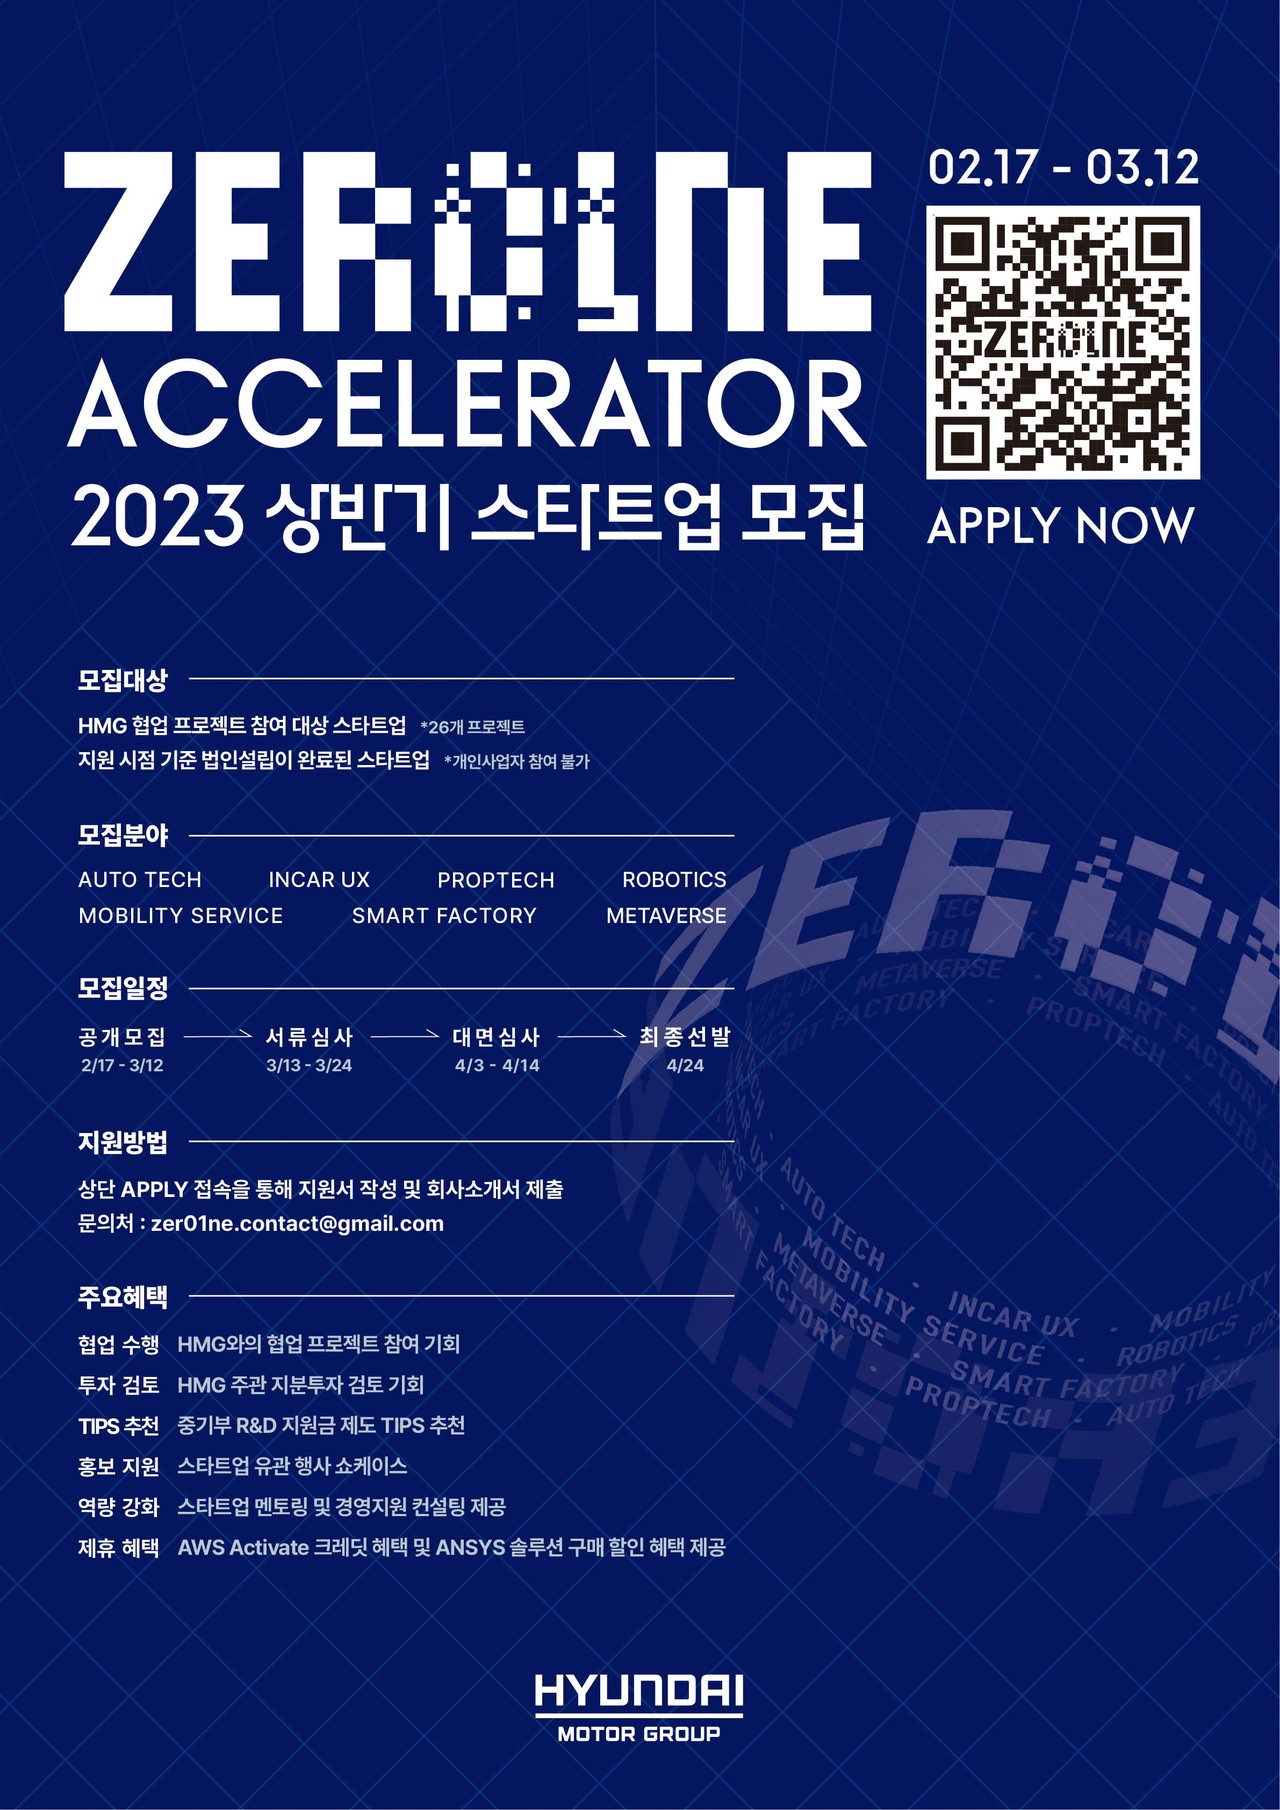 현대차그룹 오픈이노베이션 플랫폼 ‘제로원 액셀러레이터(ZER01NE ACCELERATOR)’의 2023년 상반기 스타트업 공개 모집 안내 포스터. (현대차그룹 제공)